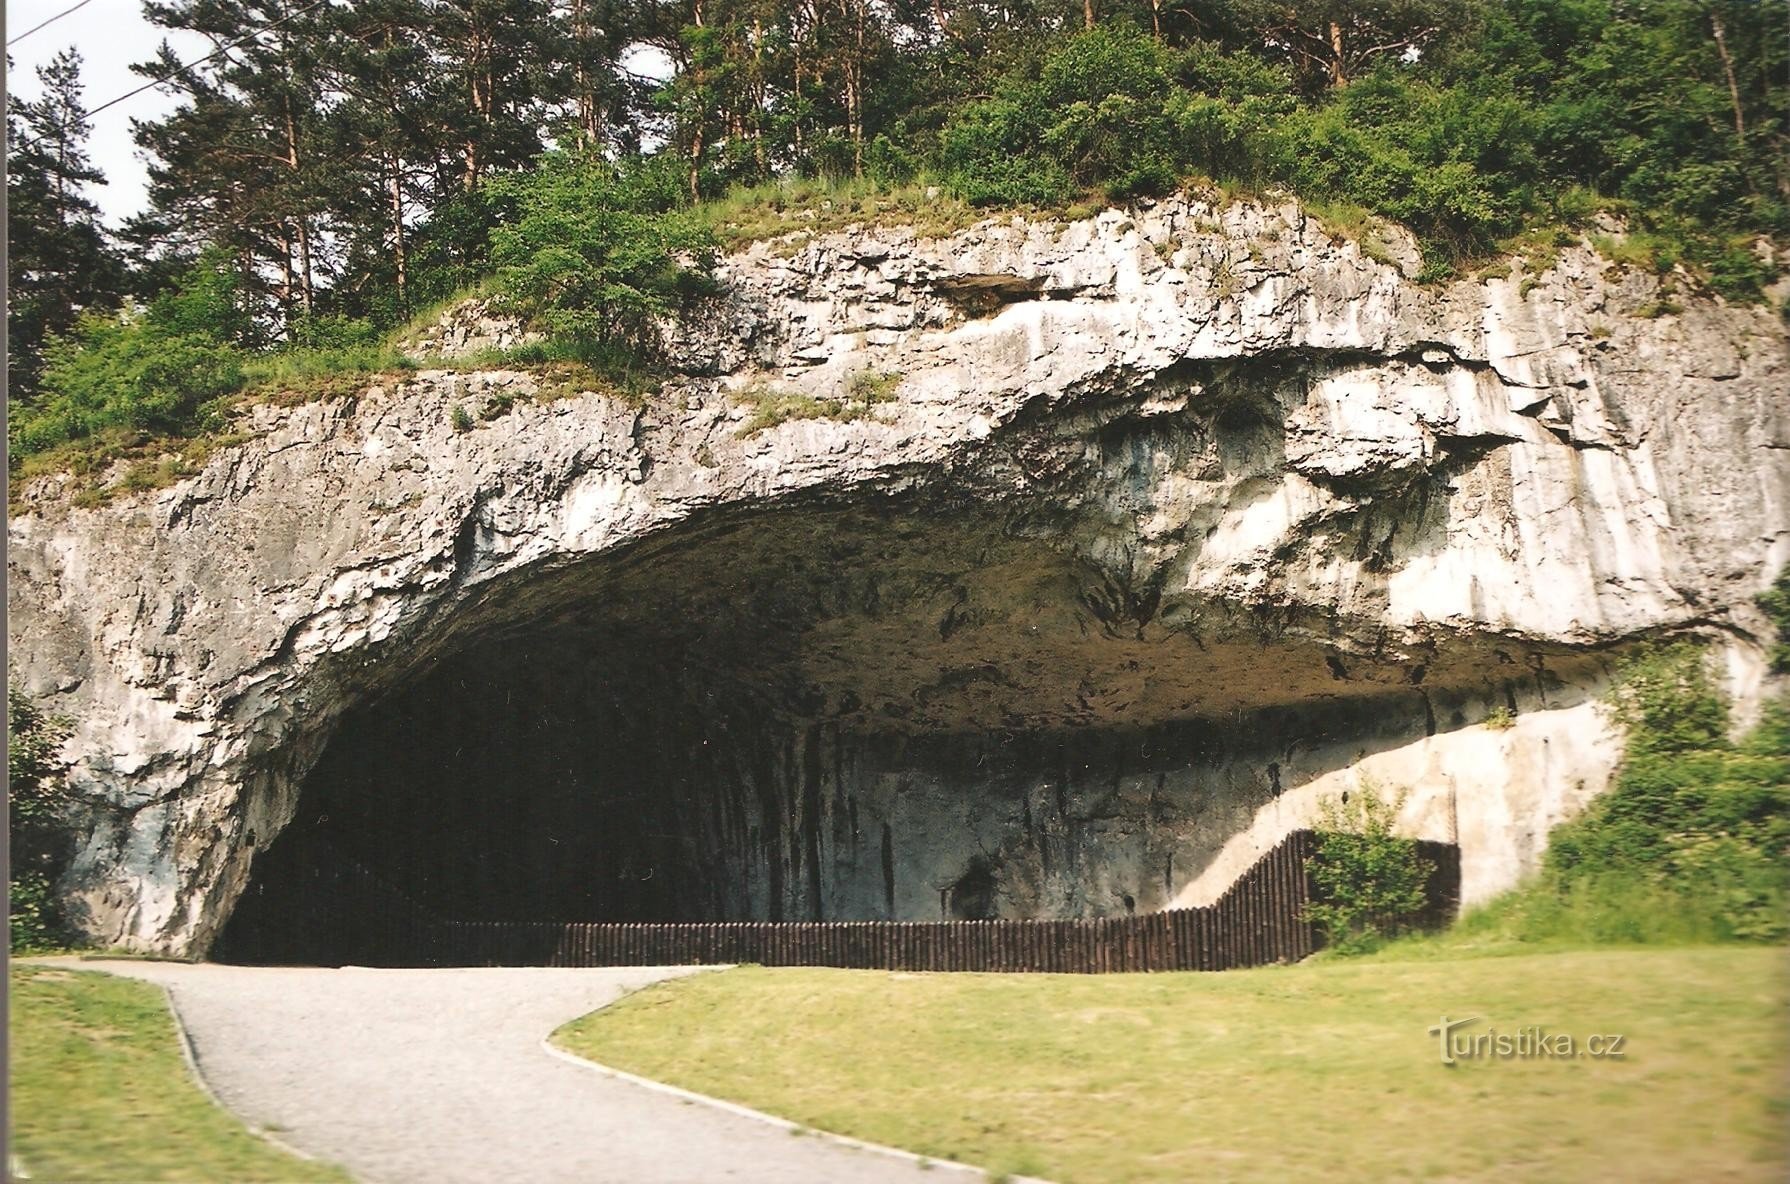 Galpão da Caverna